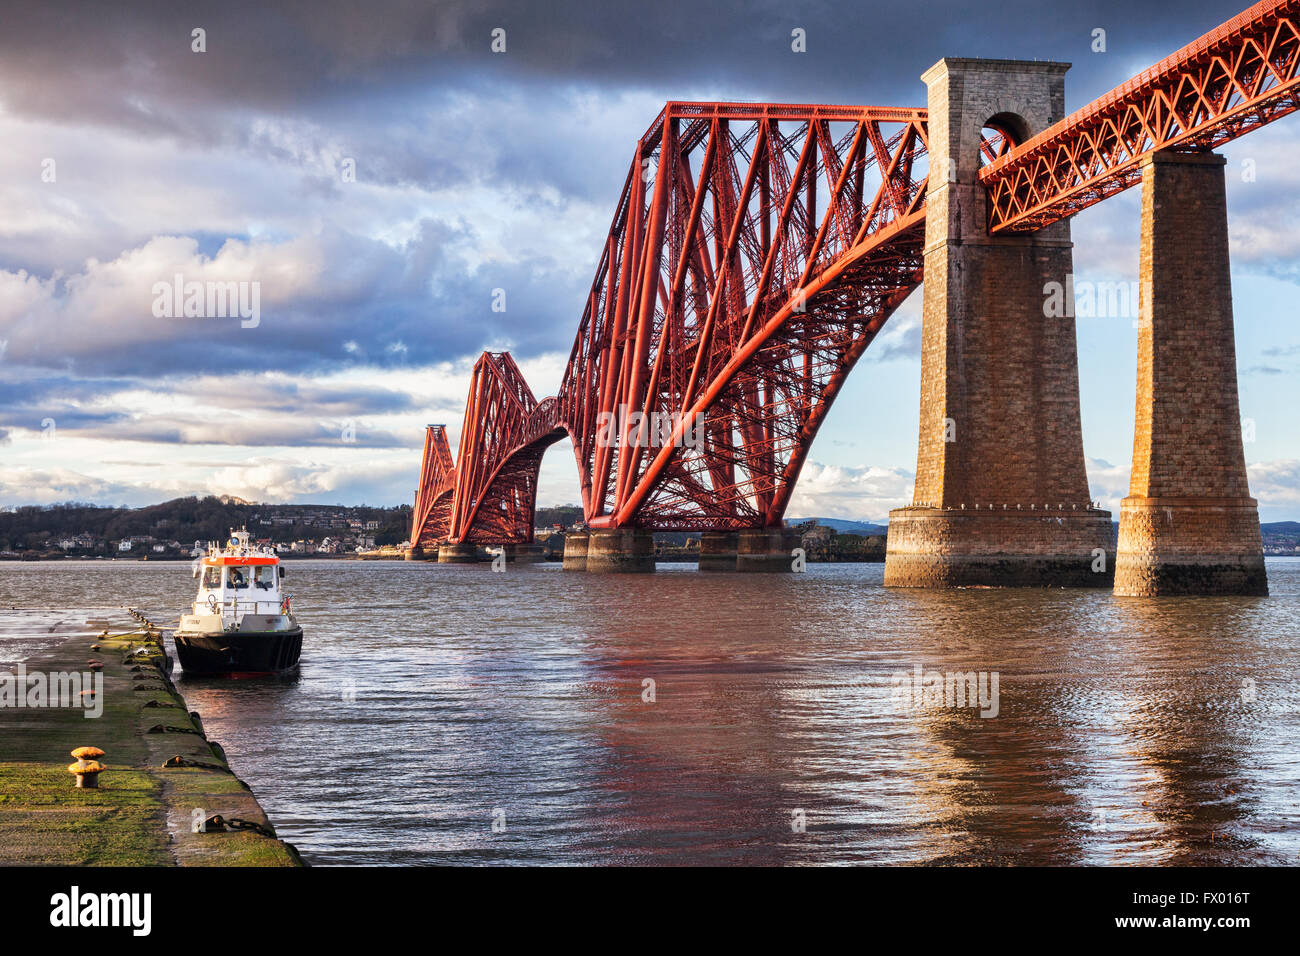 Puente ferroviario de Forth, Queensferry, East Lothian, Edimburgo, Escocia, Reino Unido, uno de los puentes más famosos del mundo y un icono o Foto de stock